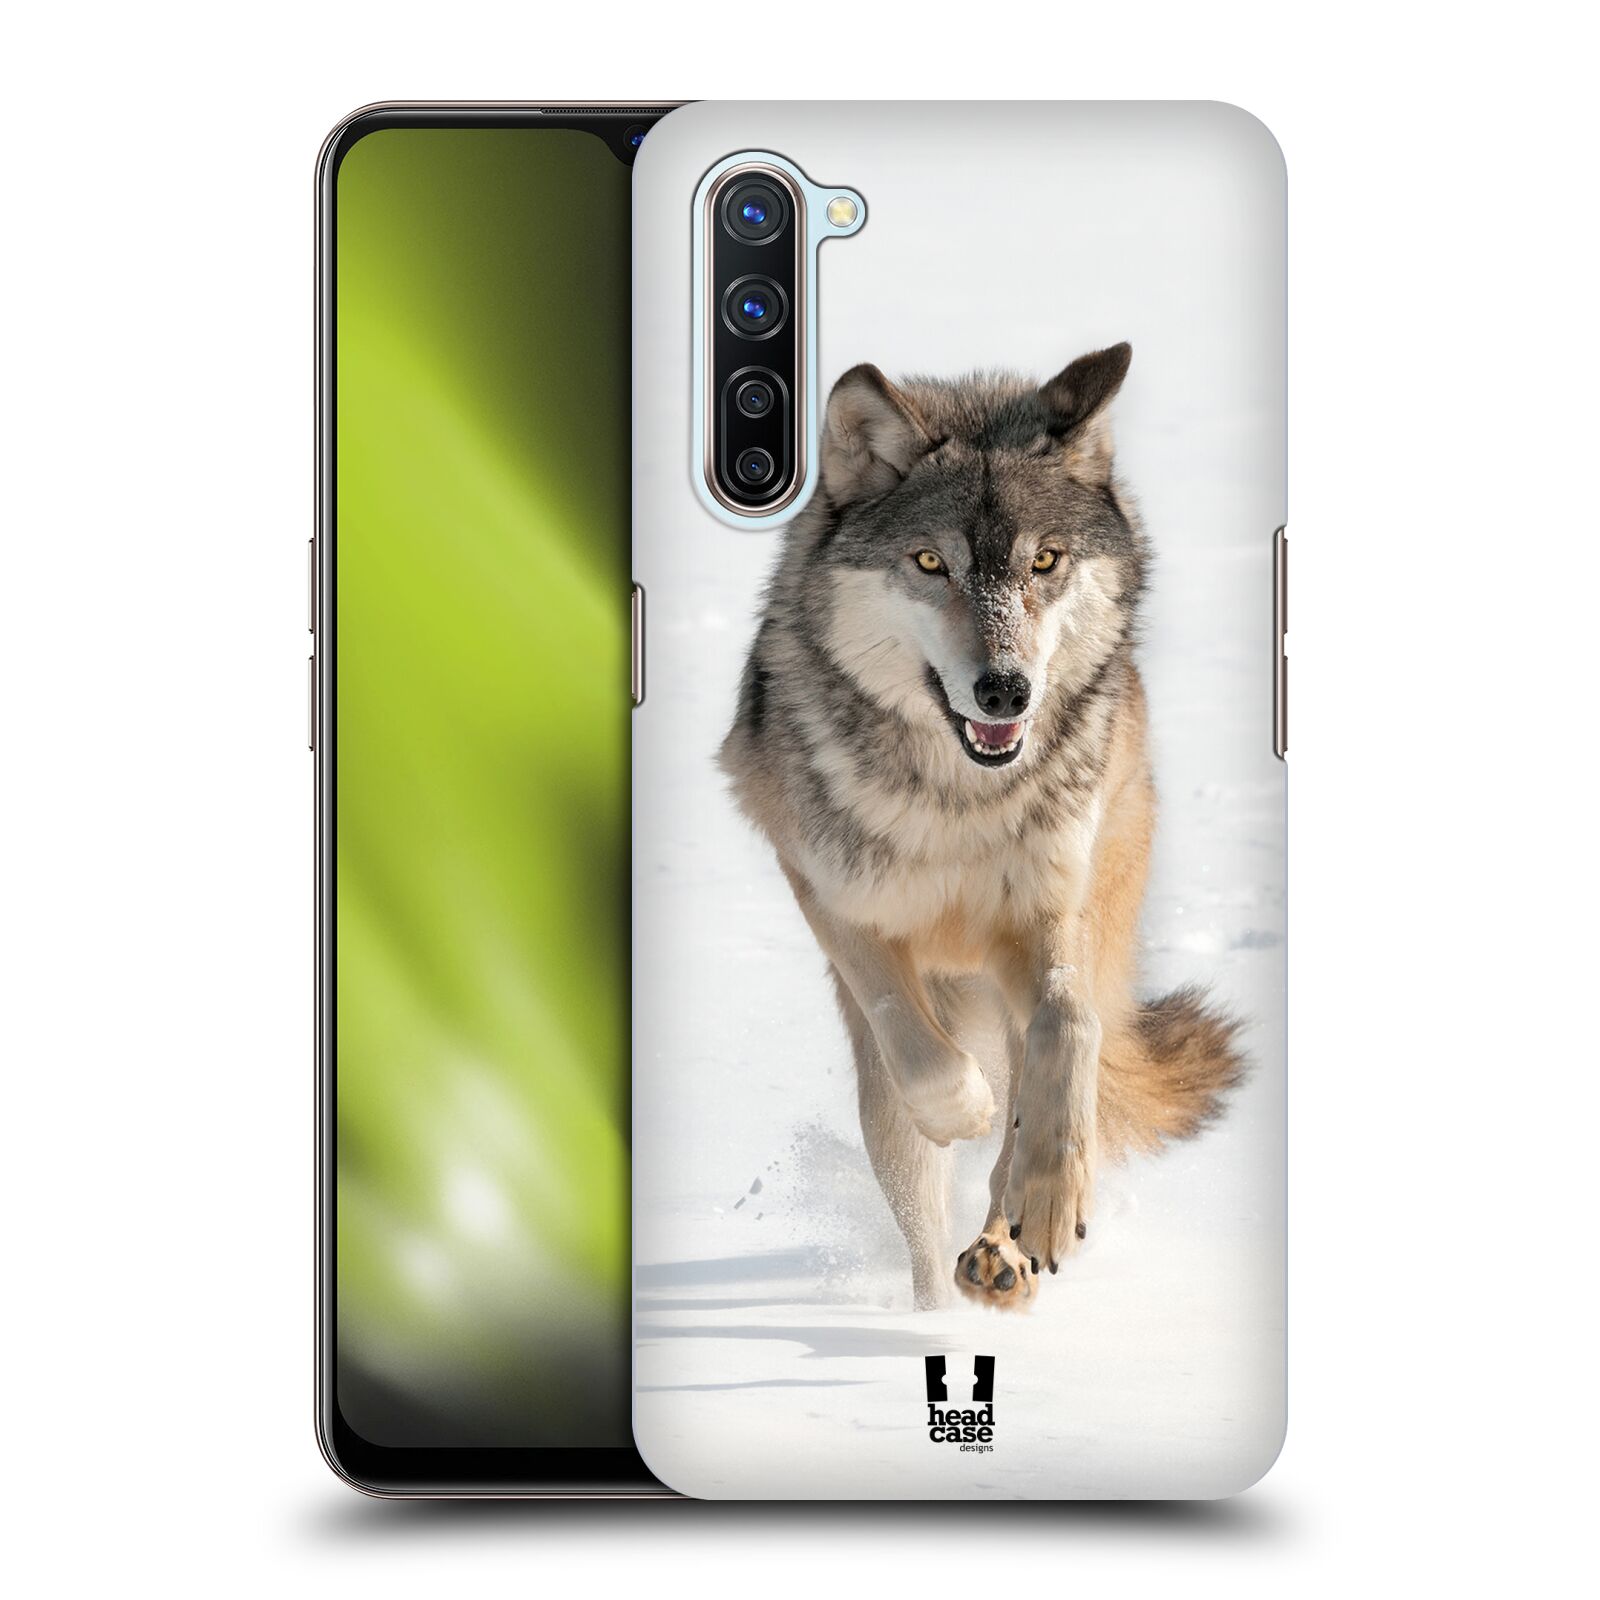 Zadní obal pro mobil Oppo Find X2 LITE - HEAD CASE - Svět zvířat divoký vlk